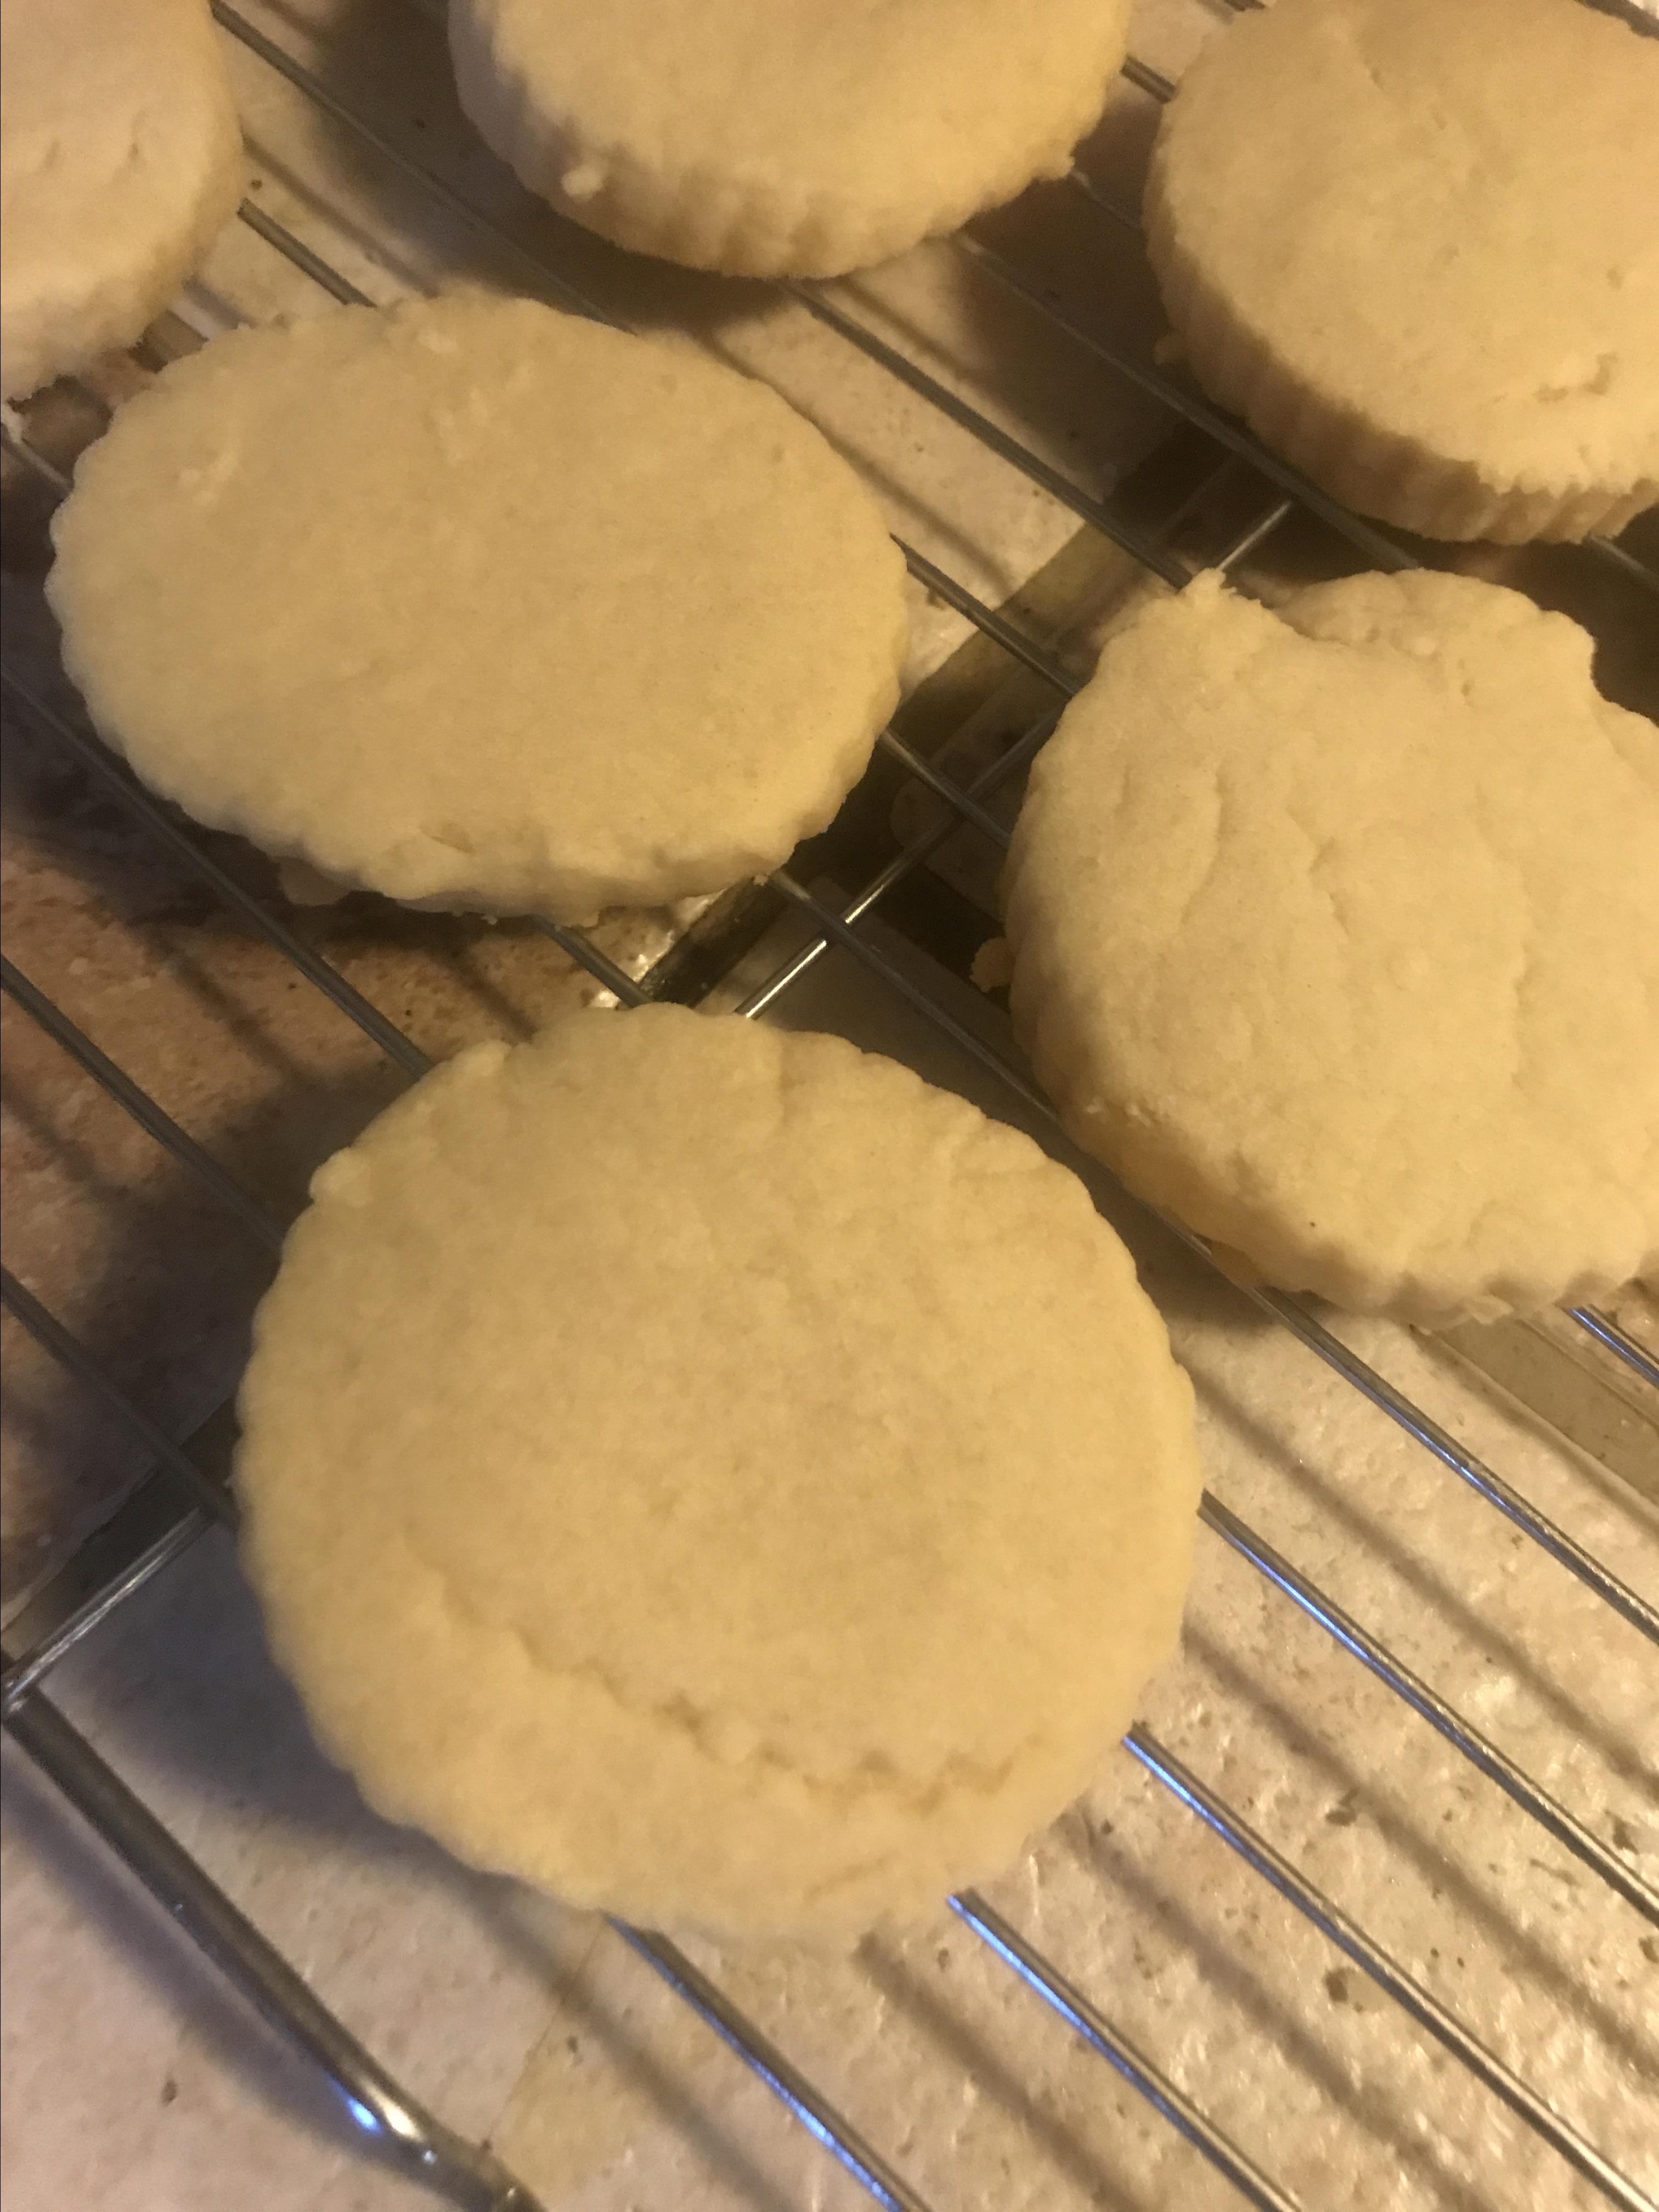 Shortbread Cookies 